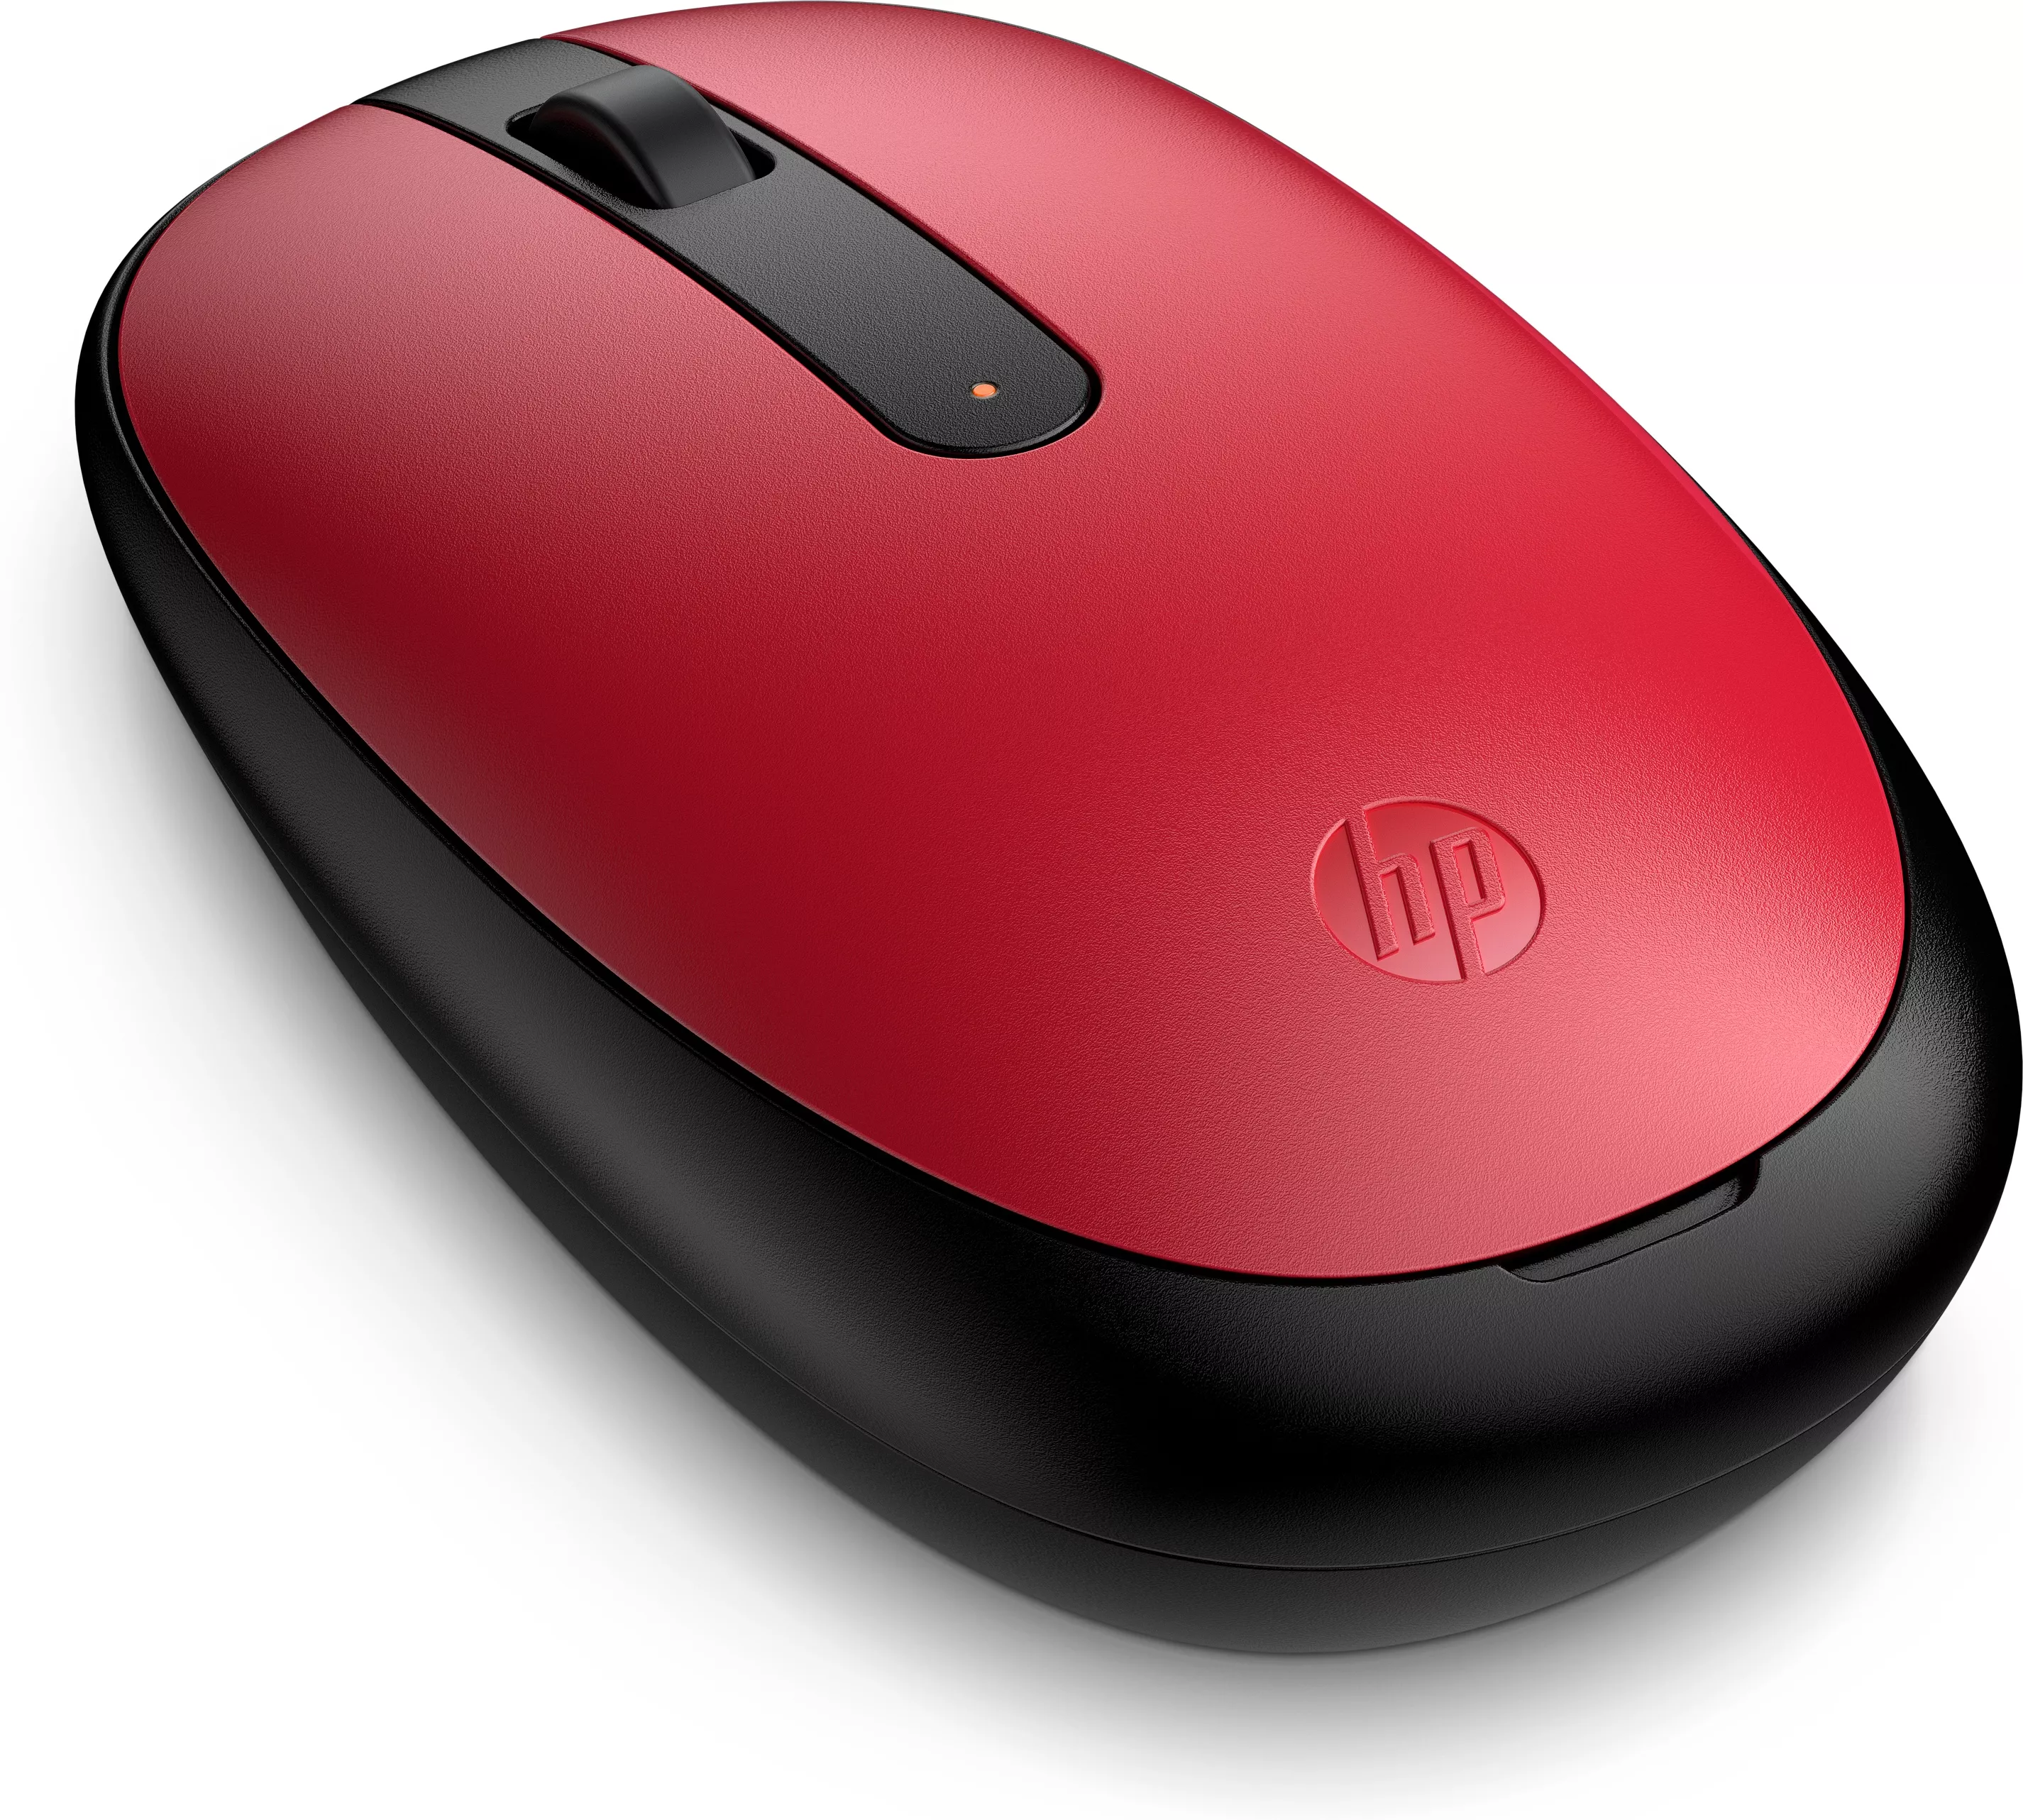 Vente Souris Bluetooth rouge empire HP 240 HP au meilleur prix - visuel 2